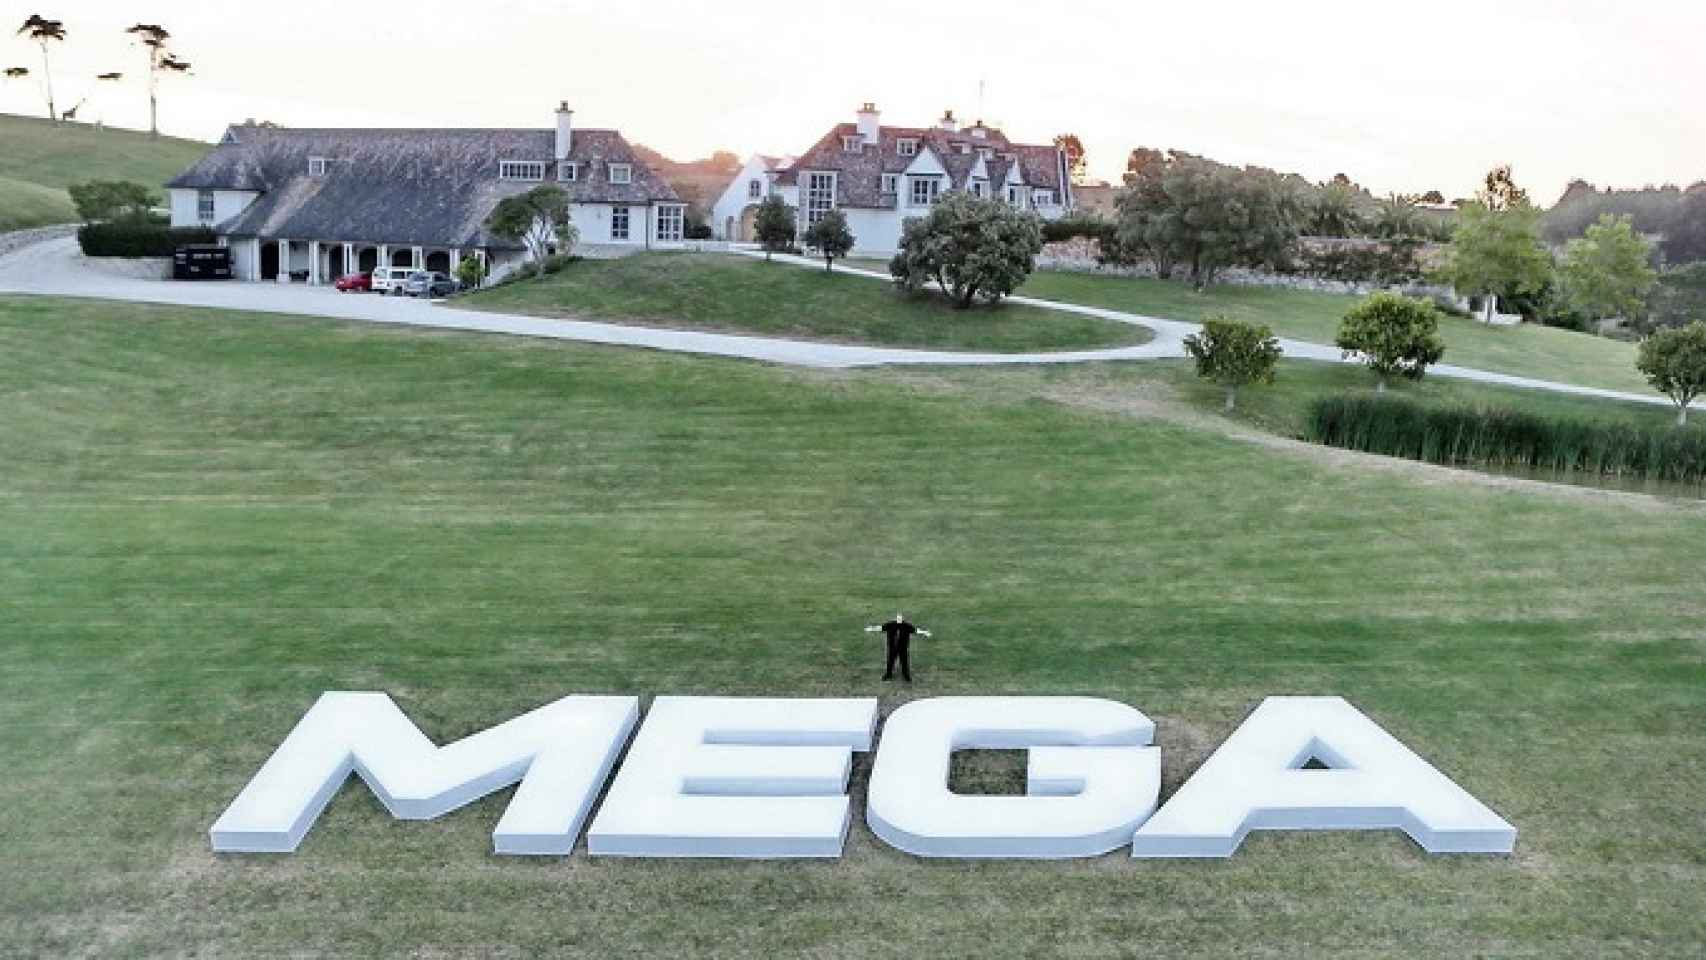 mega-mansion-kim-dotcom